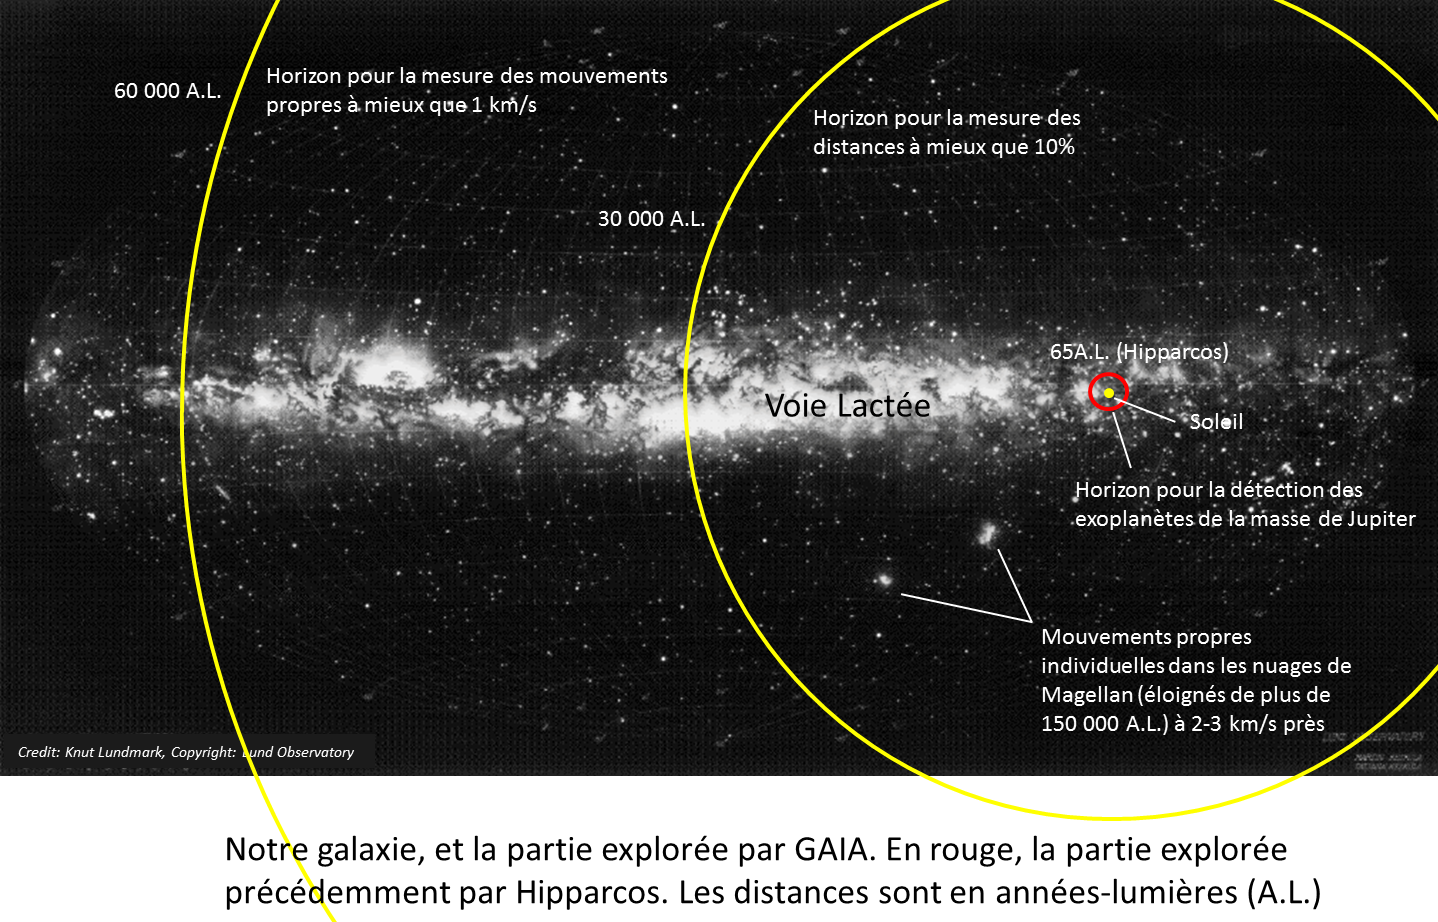 La galaxie explorée par GAIA